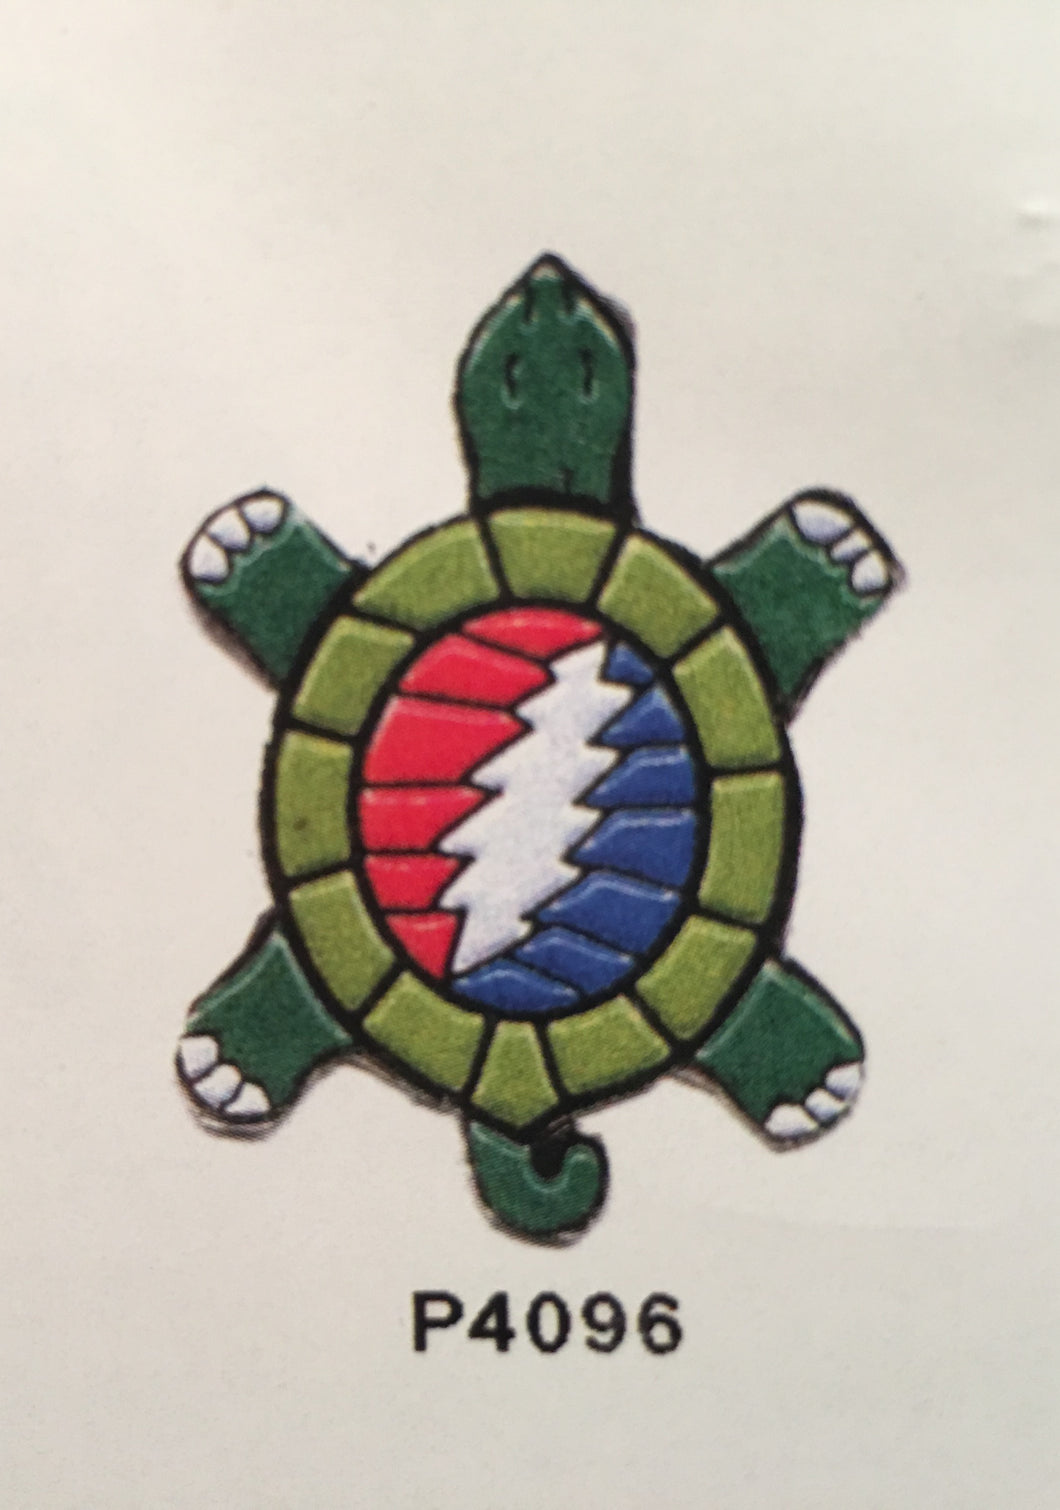 Grateful Dead Turtle Pin